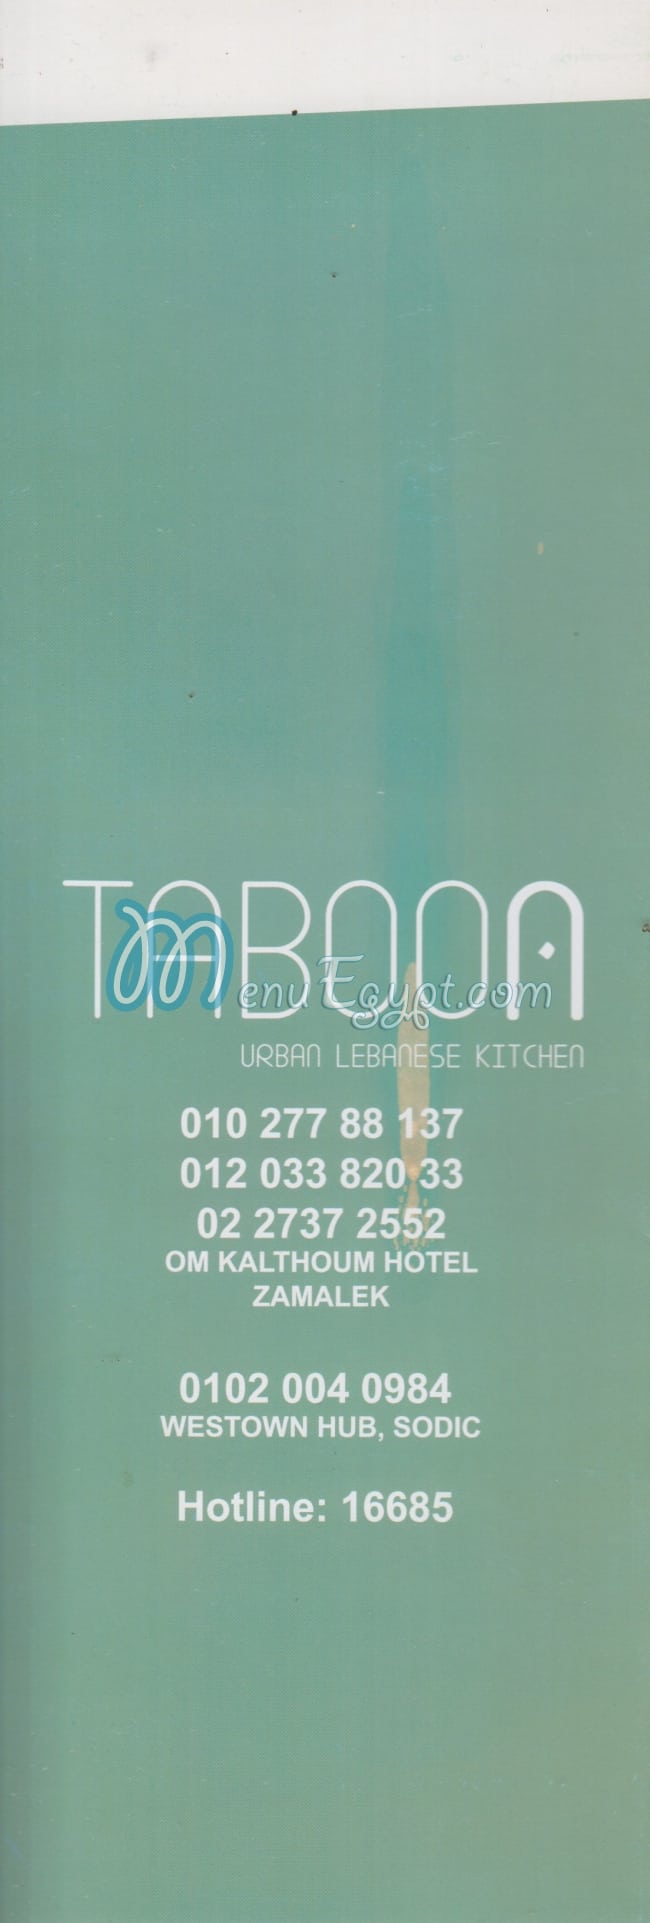 Taboon menu